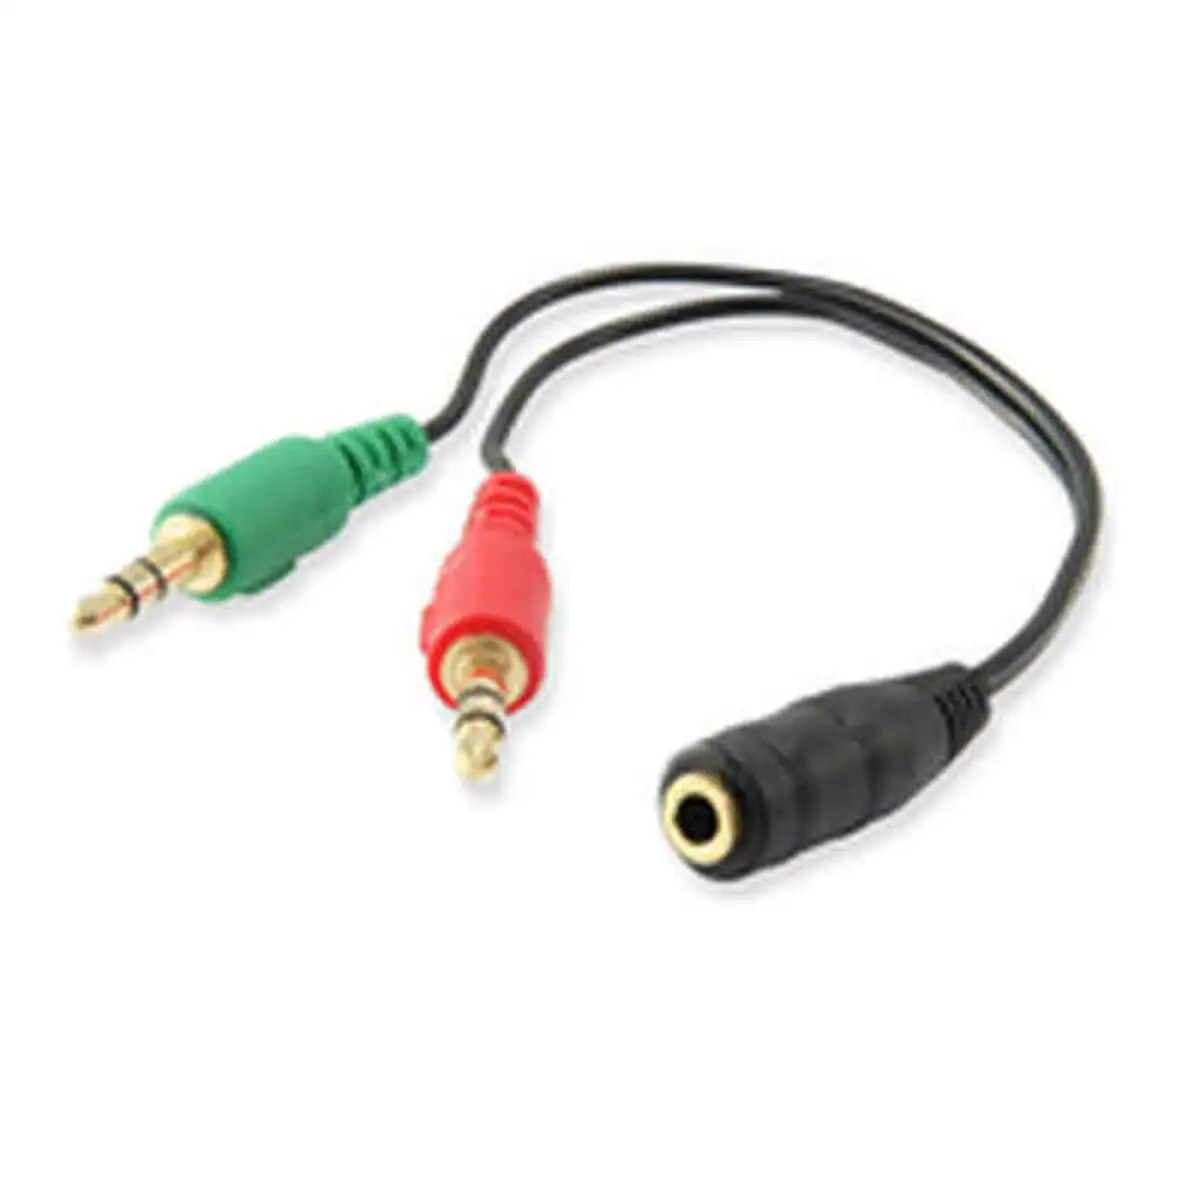 Cable audio jack 3 5 mm ewent ec1642 0 15 m_5595. DIAYTAR SENEGAL - Votre Portail Vers l'Exclusivité. Explorez notre boutique en ligne pour trouver des produits uniques et exclusifs, conçus pour les amateurs de qualité.